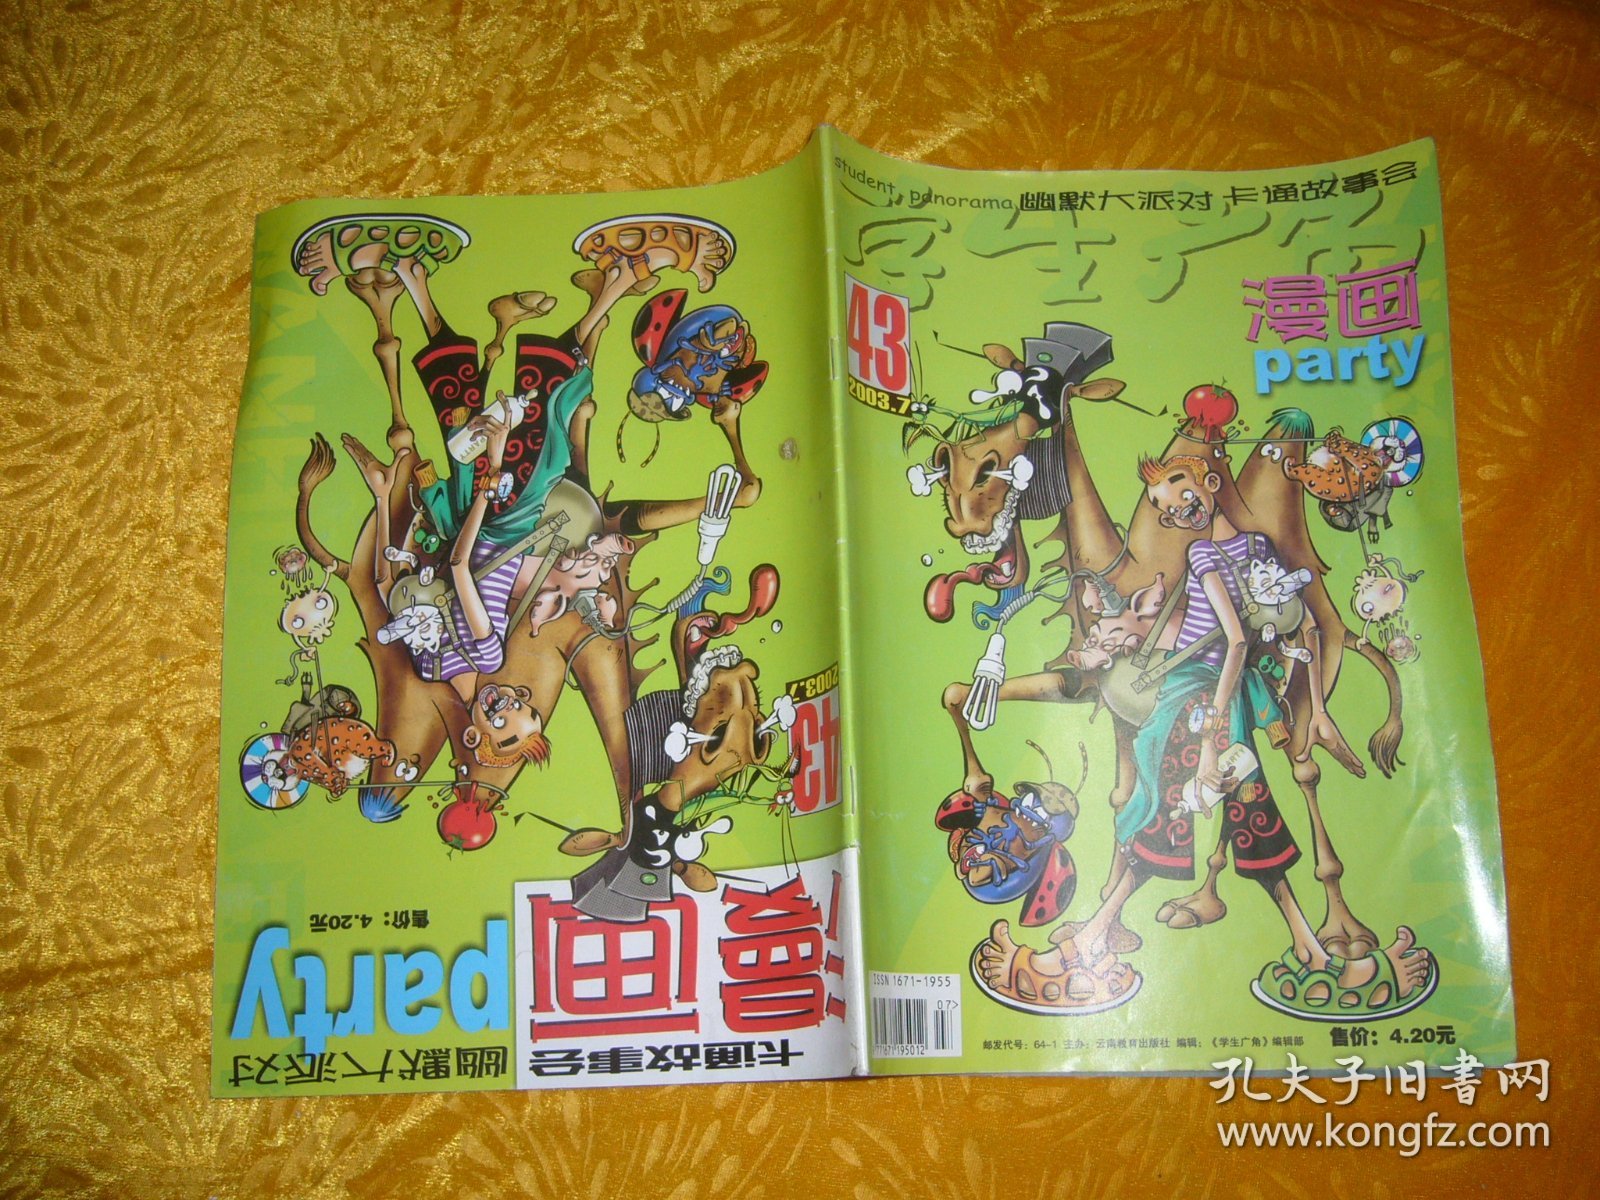 学生广角：漫画 Party 漫画派对（2003年 第7期）总第43期  //  大16开 【购满100元免运费】